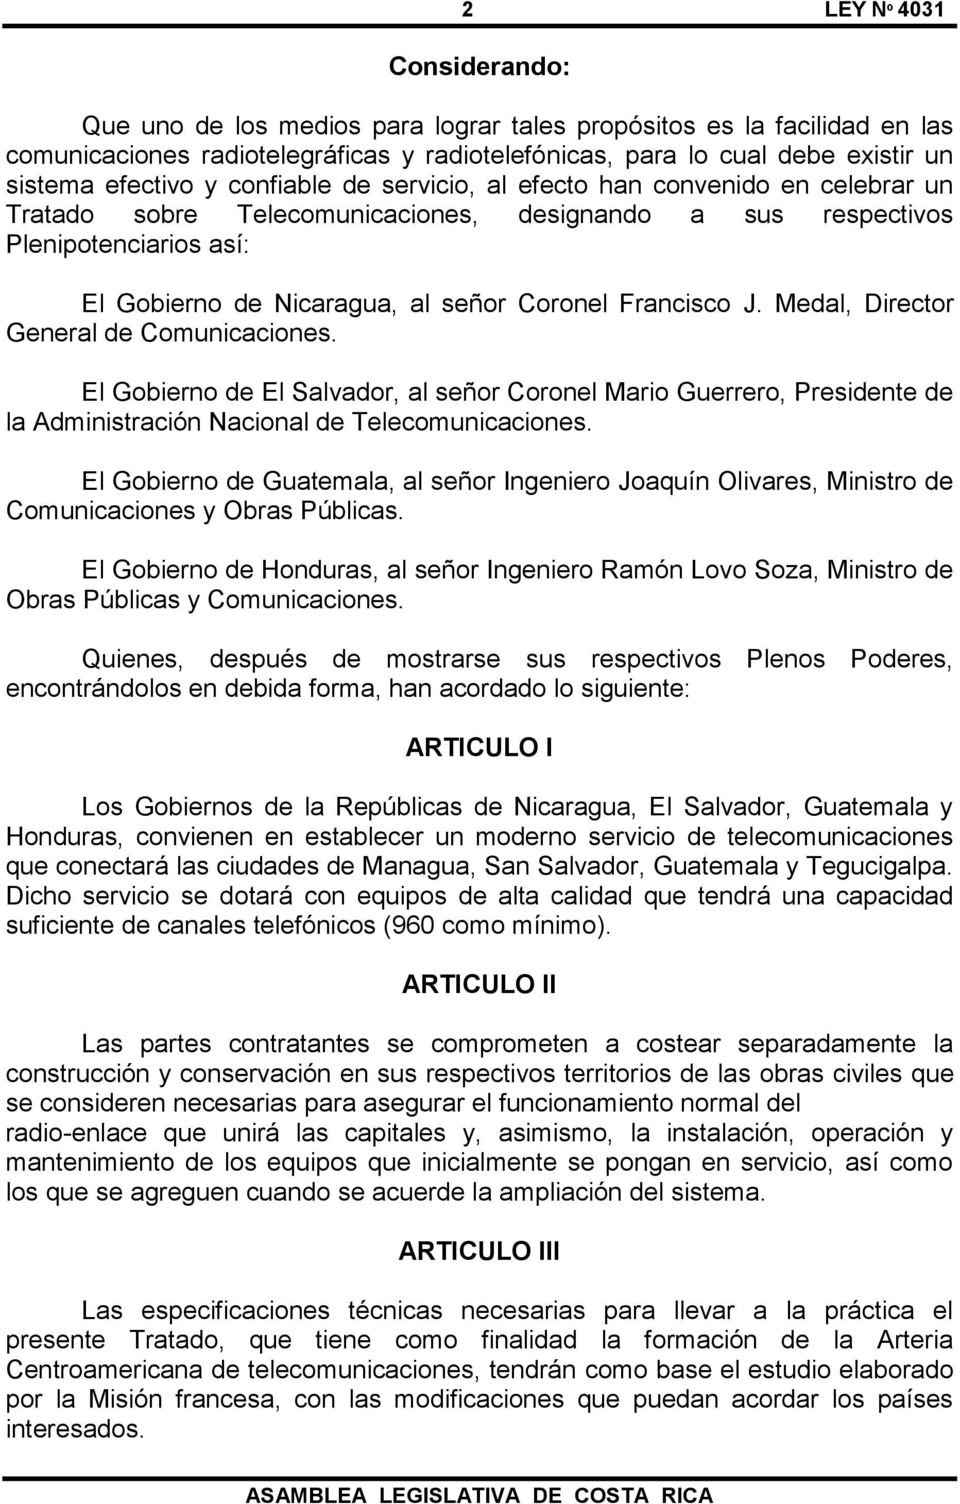 Medal, Director General de Comunicaciones. El Gobierno de El Salvador, al señor Coronel Mario Guerrero, Presidente de la Administración Nacional de Telecomunicaciones.